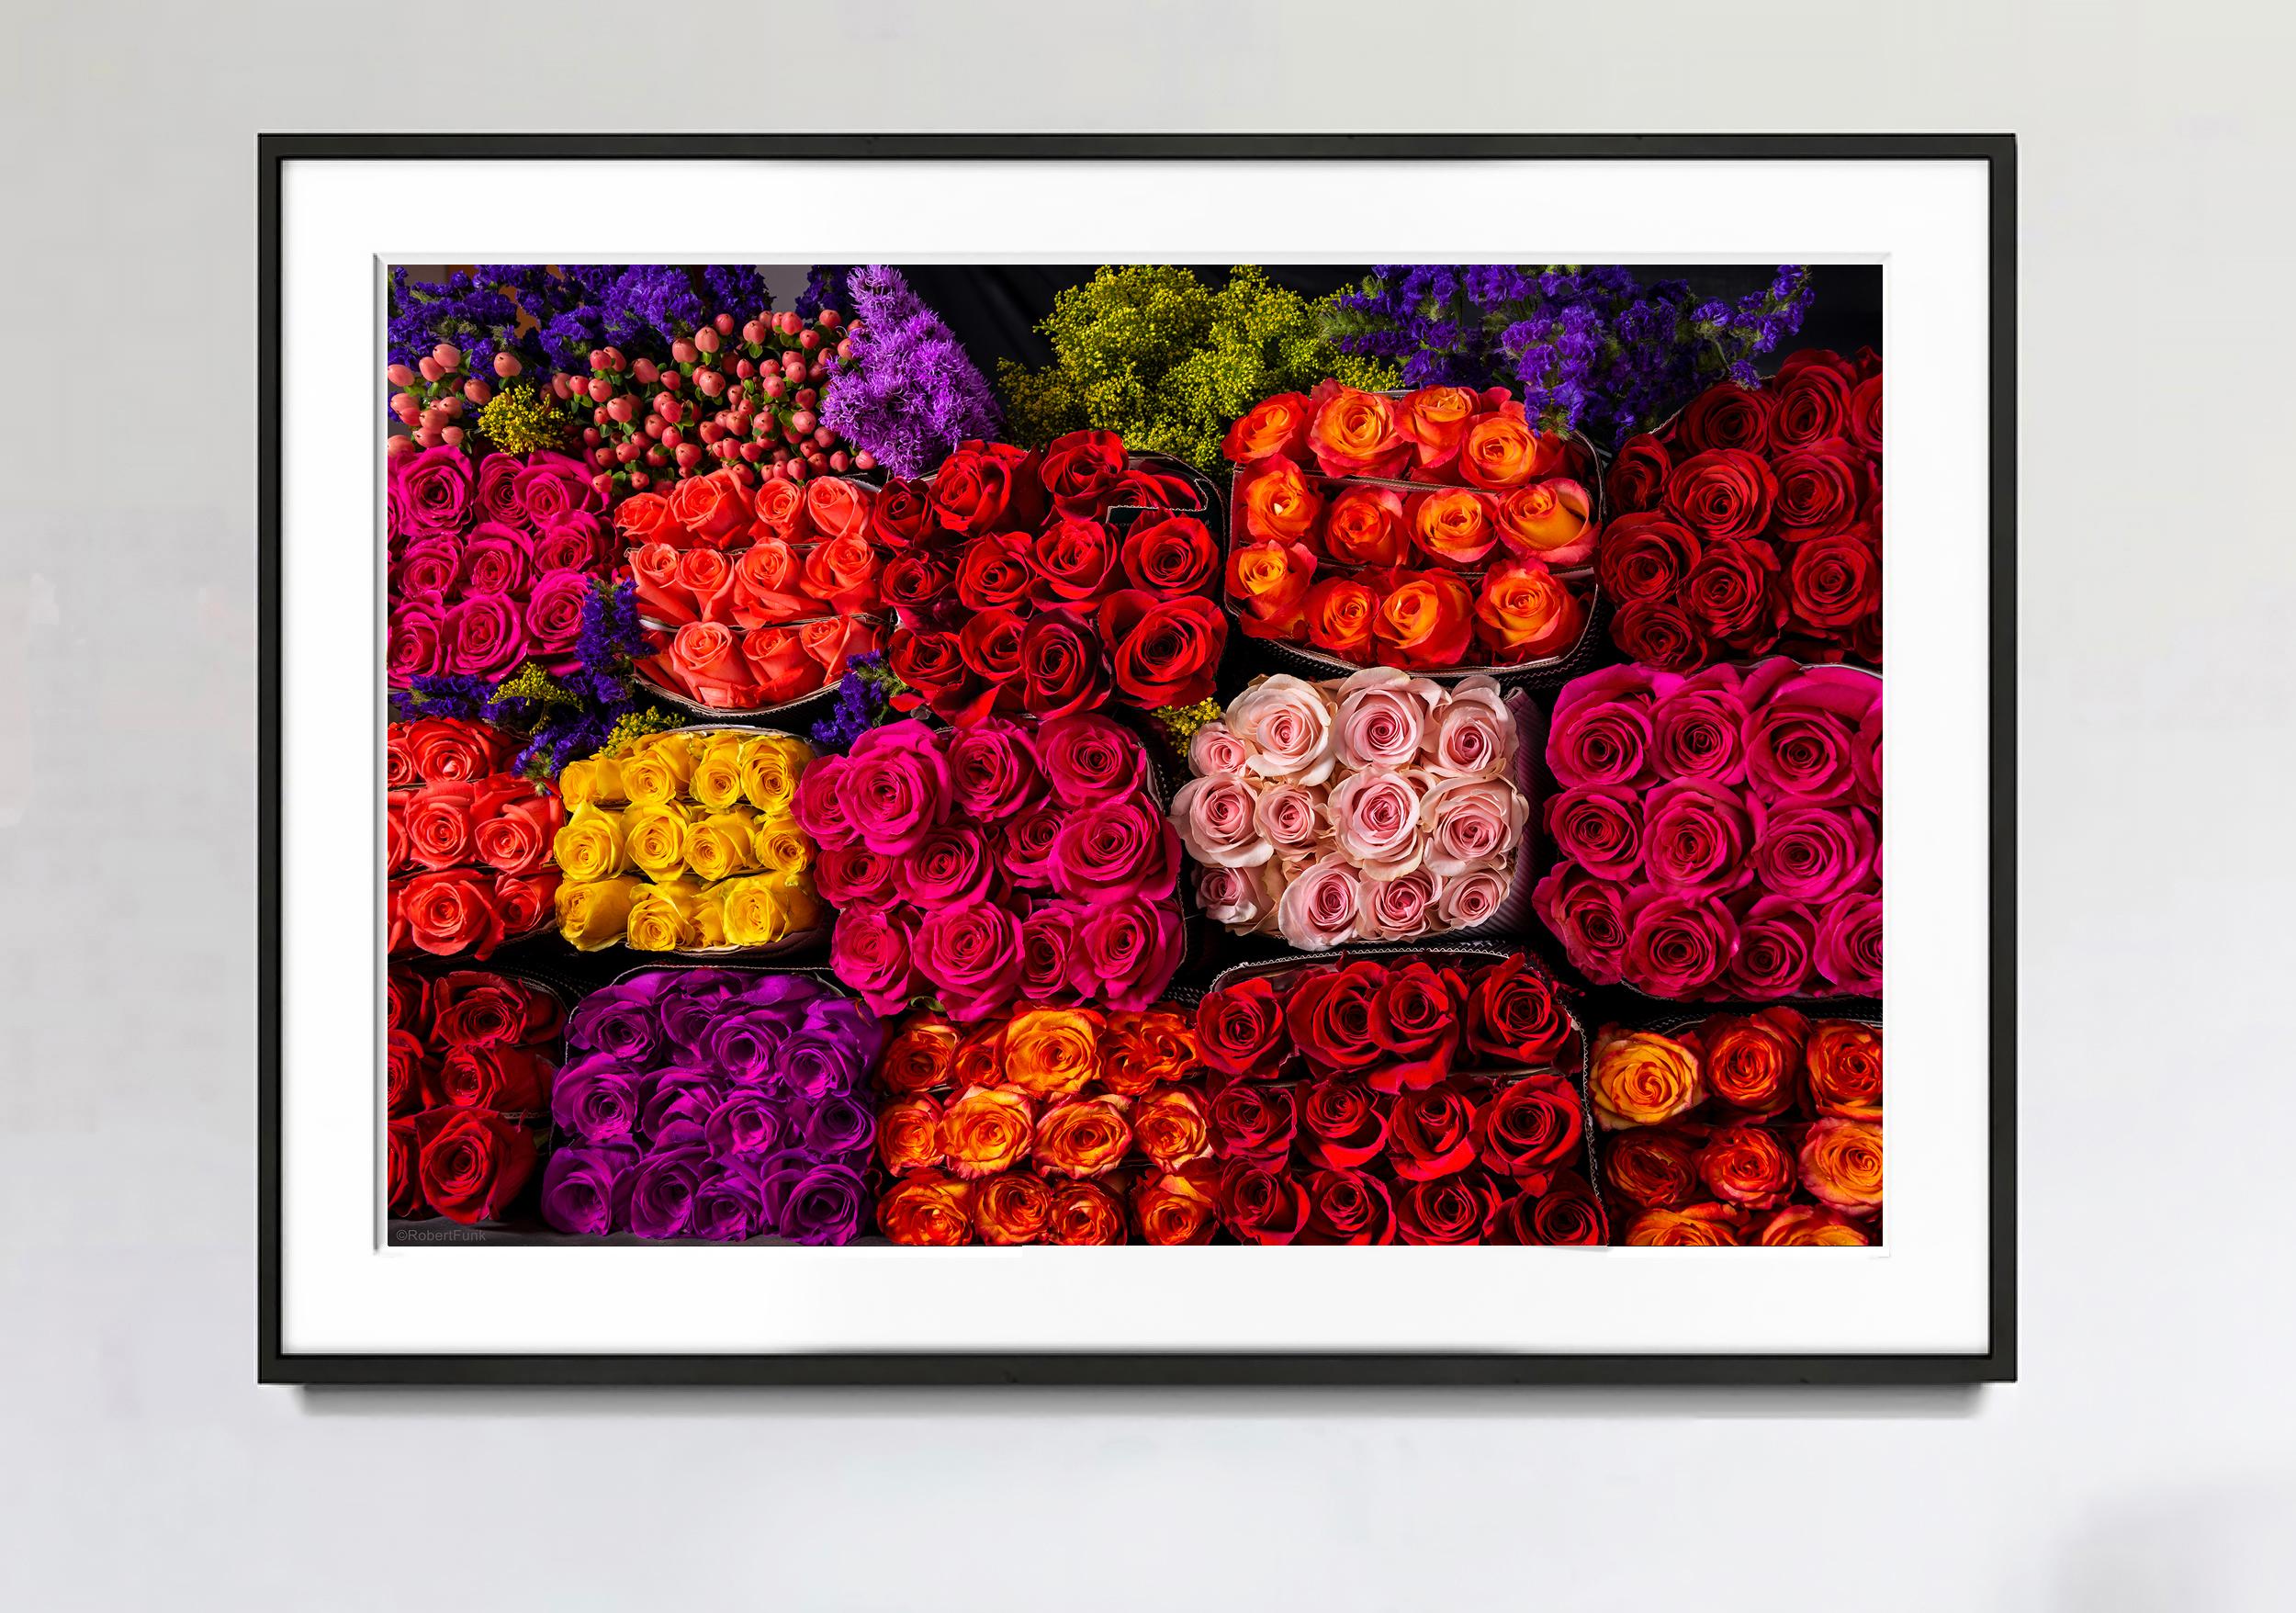 Dreihundert und sechzig lila-rosa und rote Rosen,  Blume Power  – Photograph von Robert Funk